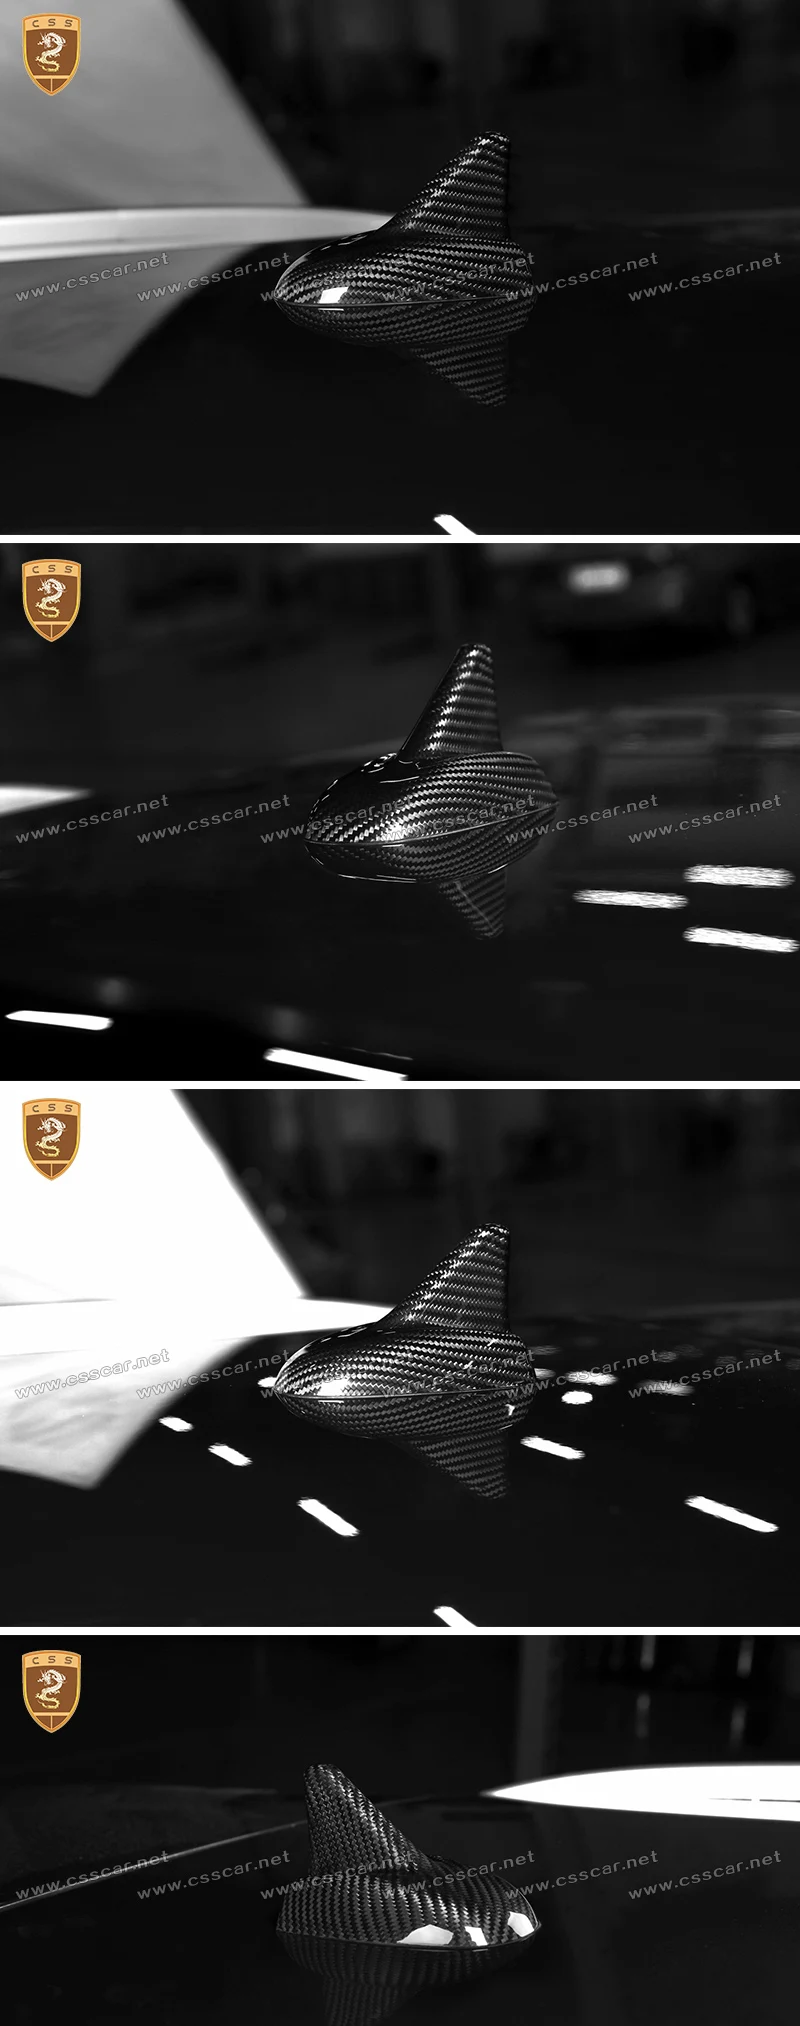 Углеродное волокно плавник акулы радио крыша антенна крышка отделка Подходит для Maserati Levante автомобиля Стайлинг автомобилей Аксессуары